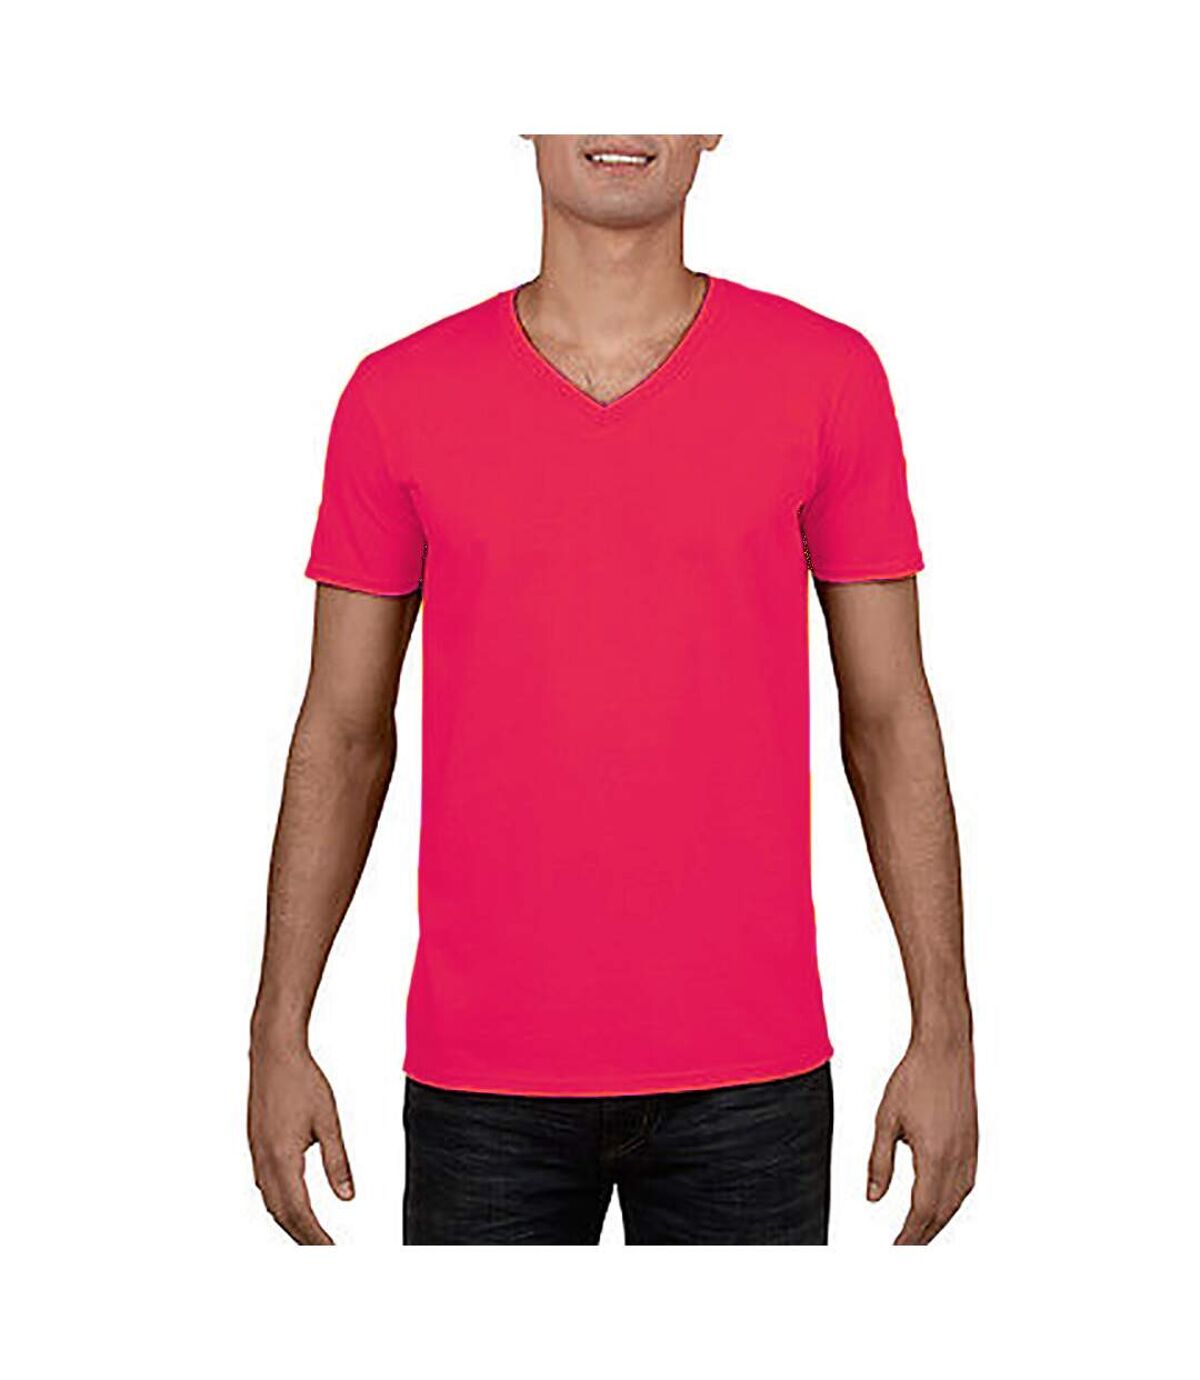 Gildan - T-shirt à manches courtes - Homme (Rose) - UTRW4738